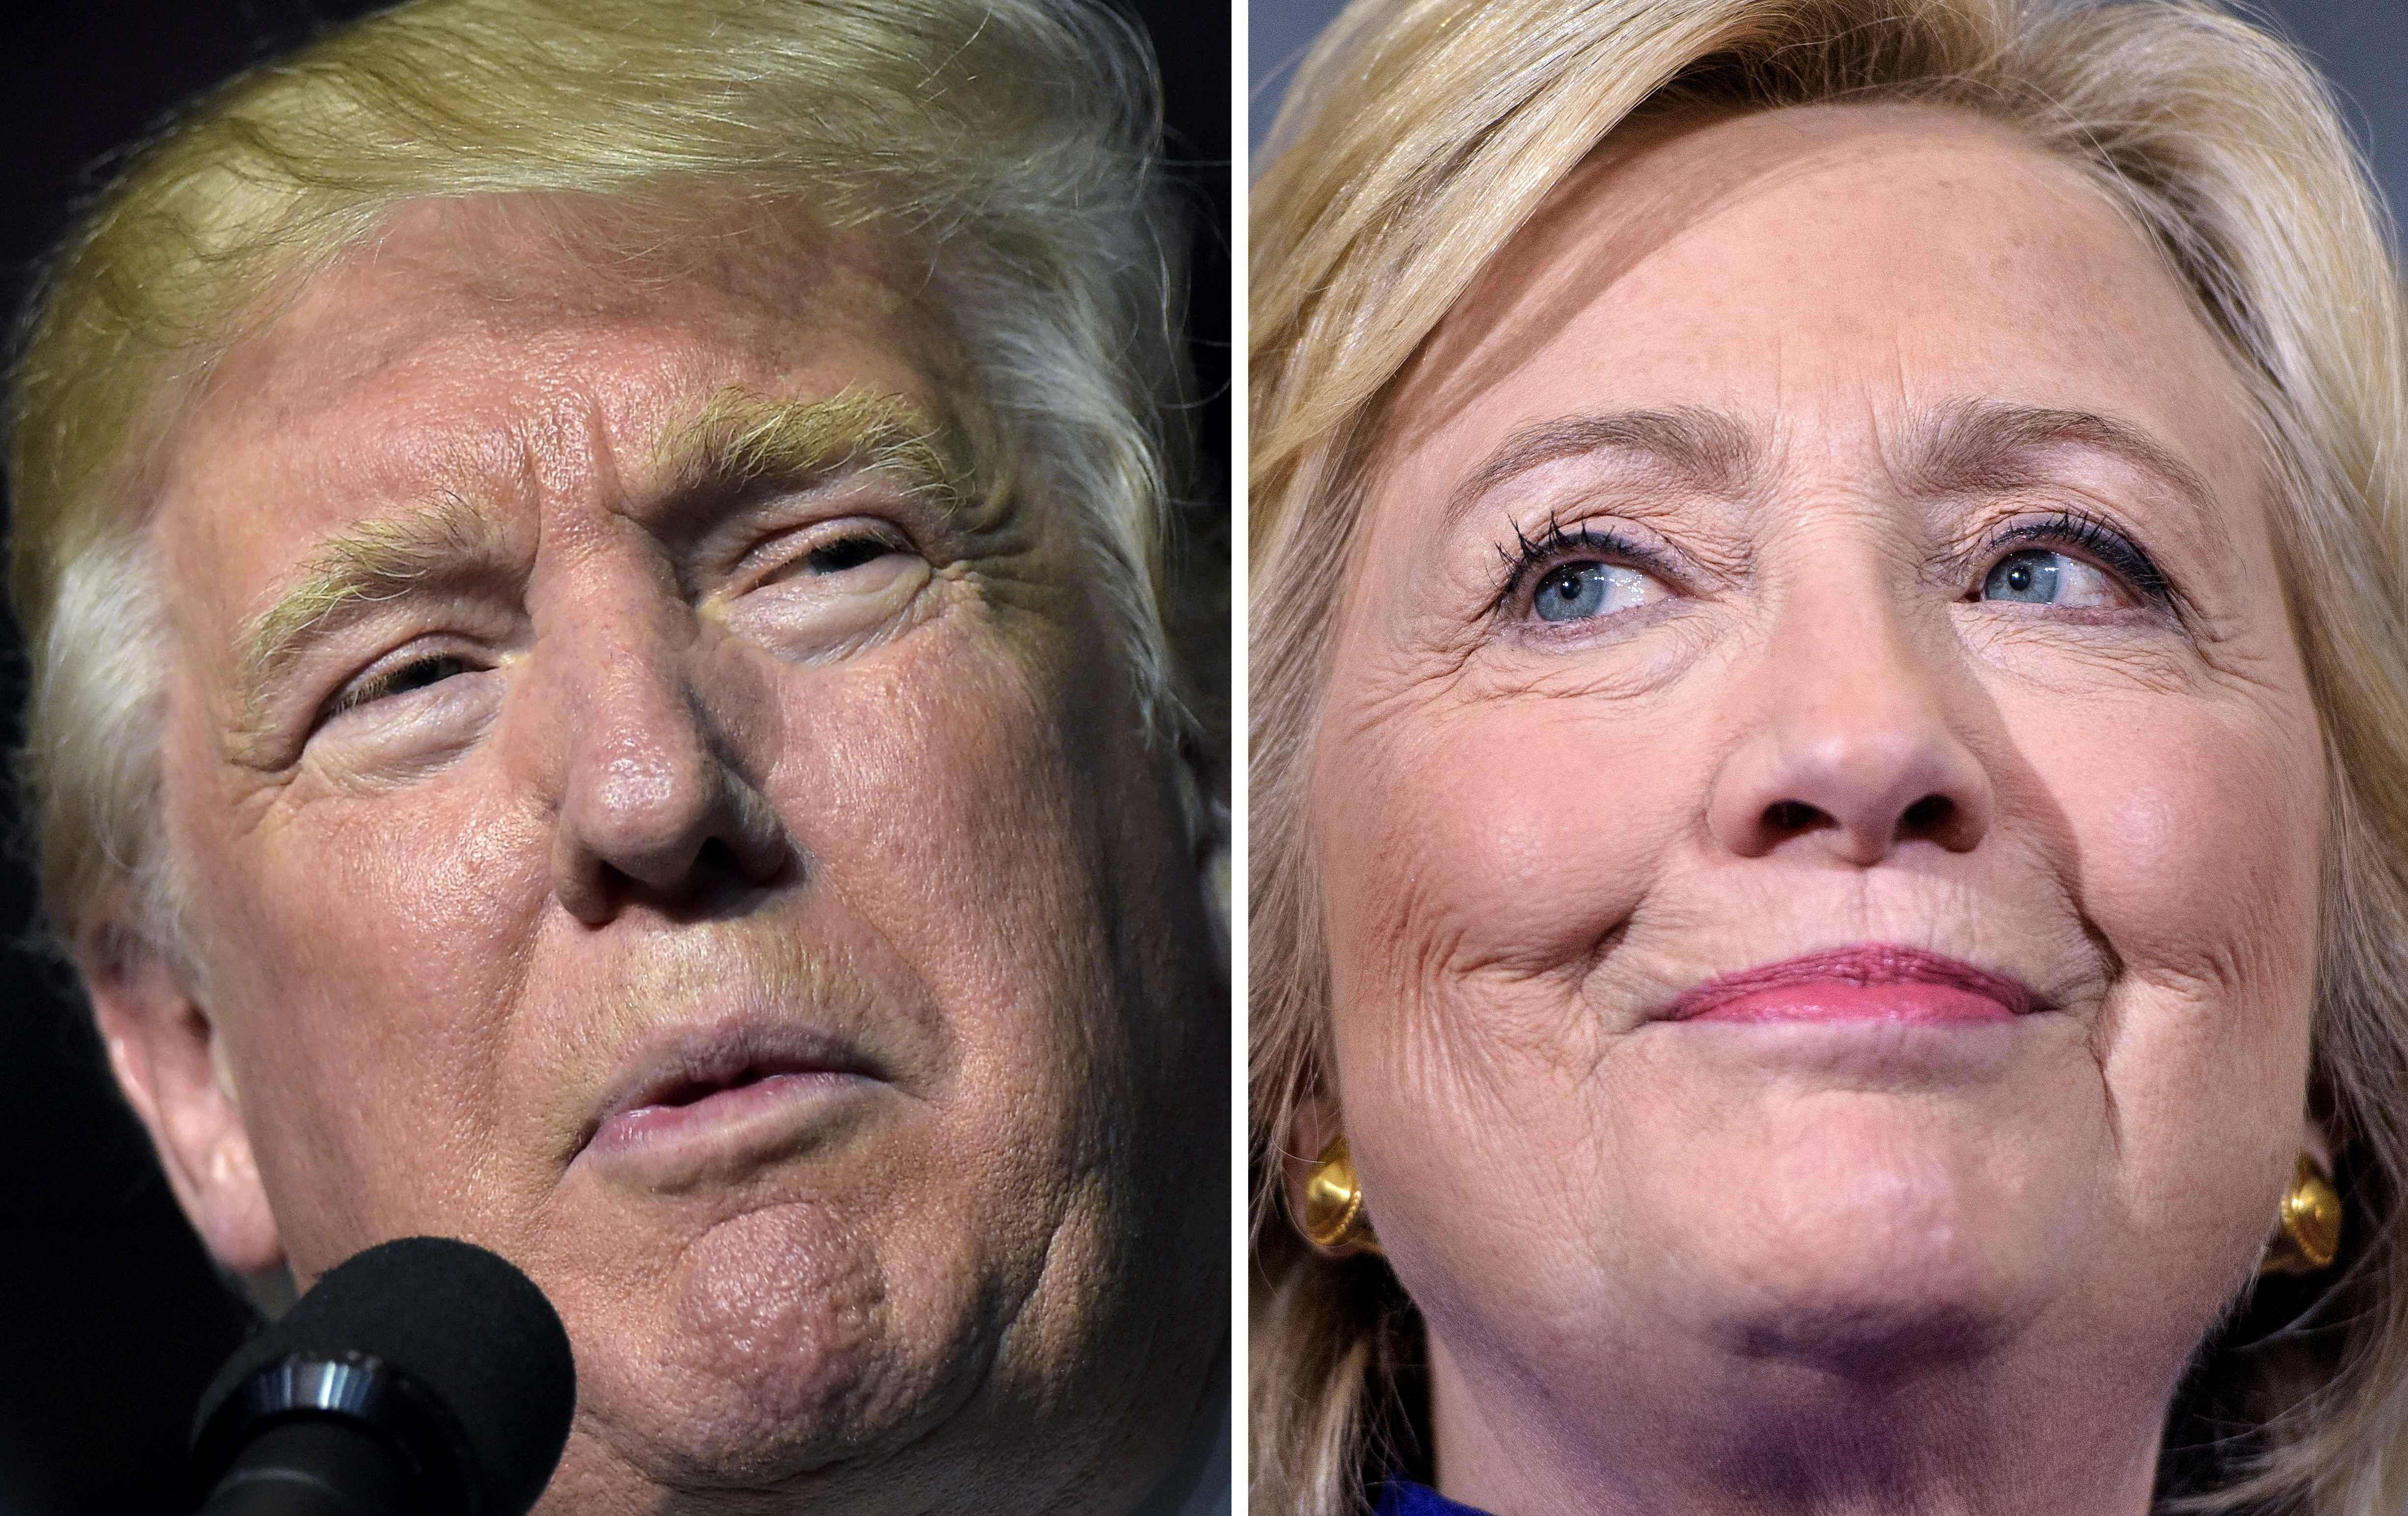 Clinton, Trump in virtual tie ahead of first debate